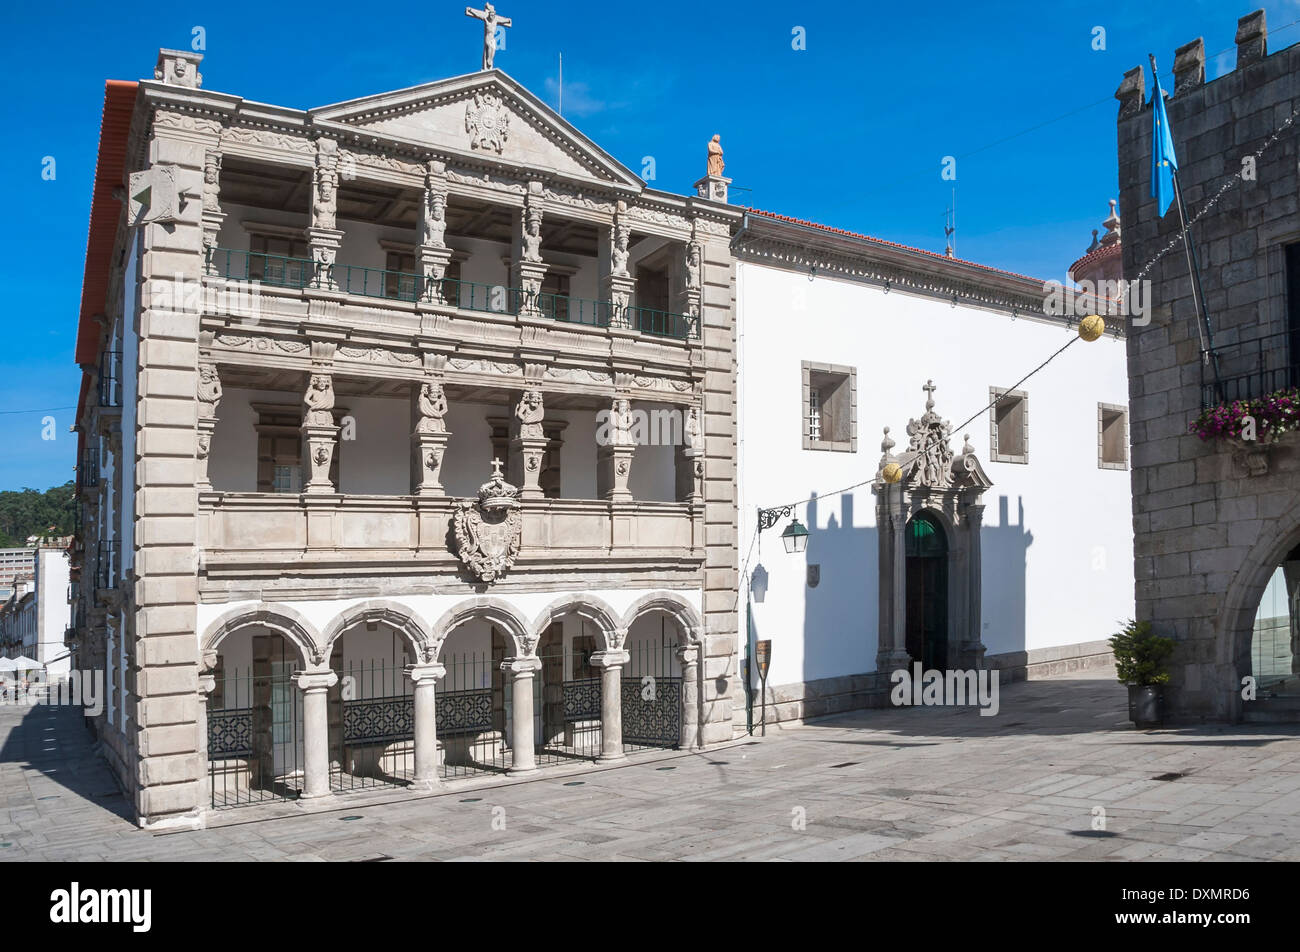 Misericordia, bâtiment de style Renaissance, Viana do Castelo, Minho, Portugal Banque D'Images